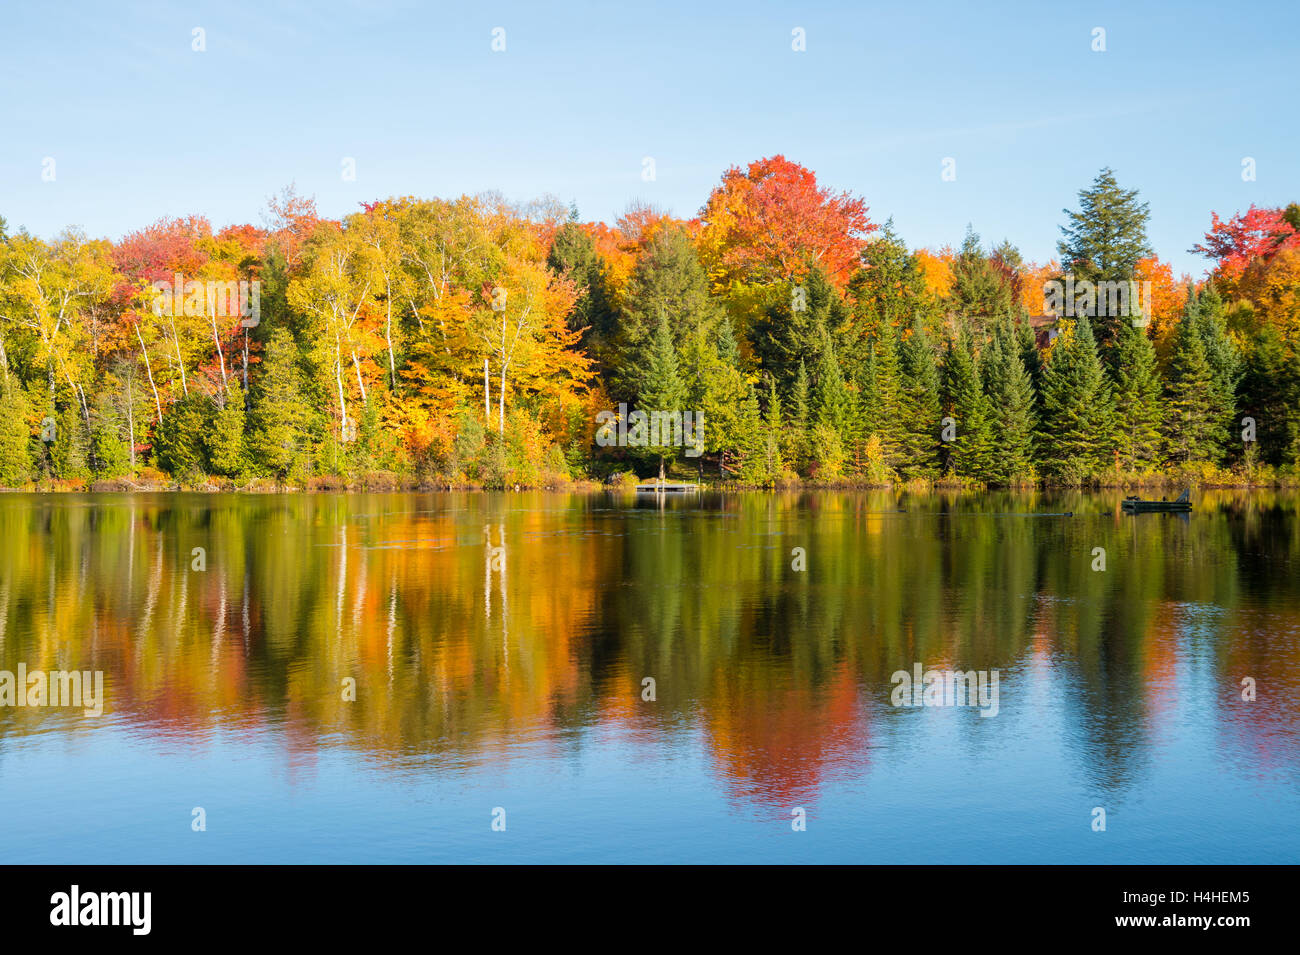 Feuillage de l'automne - Couleurs d'automne au Québec, Canada (Lac Saint-Amour à Sainte-Anne-des-Lacs) Banque D'Images